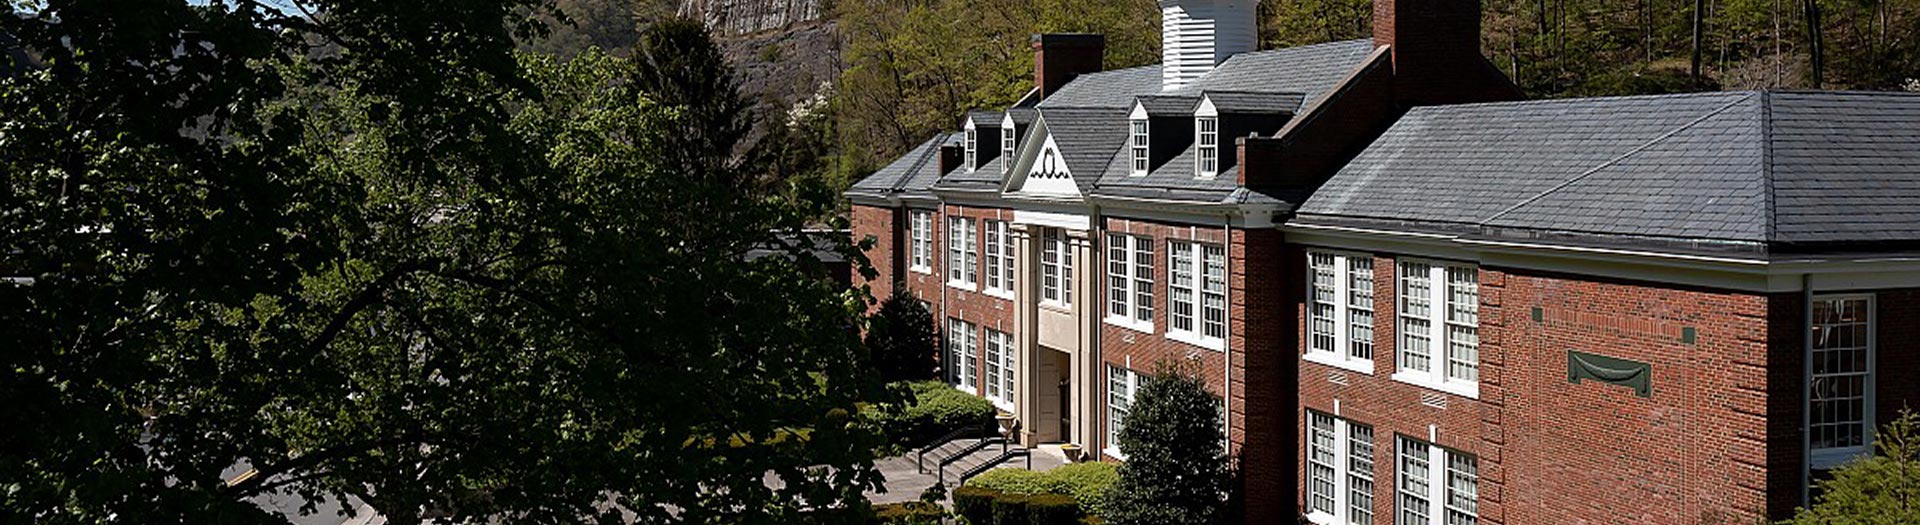 Appalachian School of Law campus